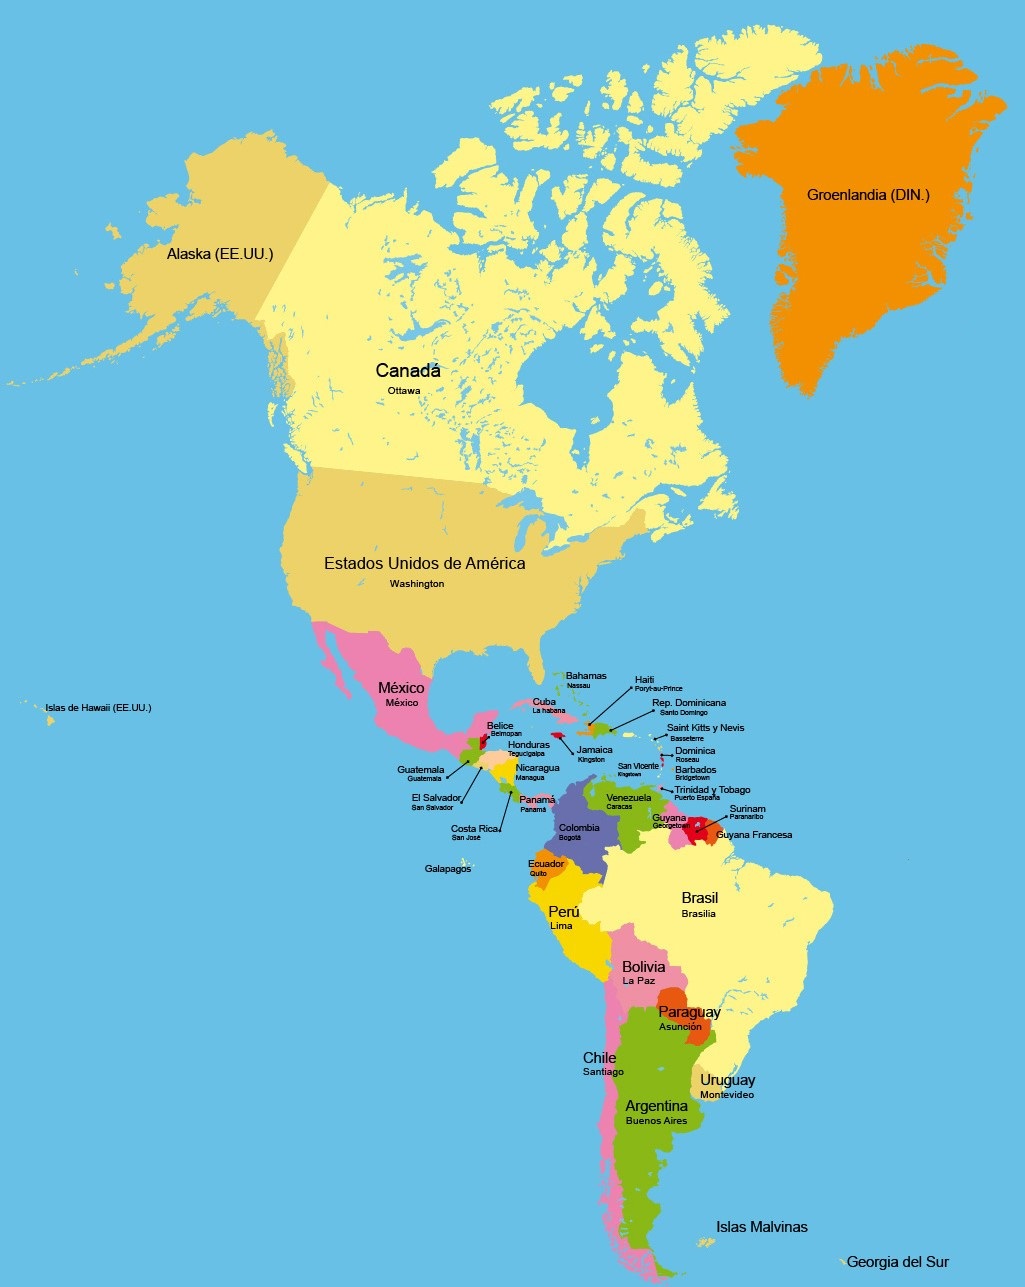 Juegos De Geografía Juego De Países Y Capitales De América En El Mapa 0056